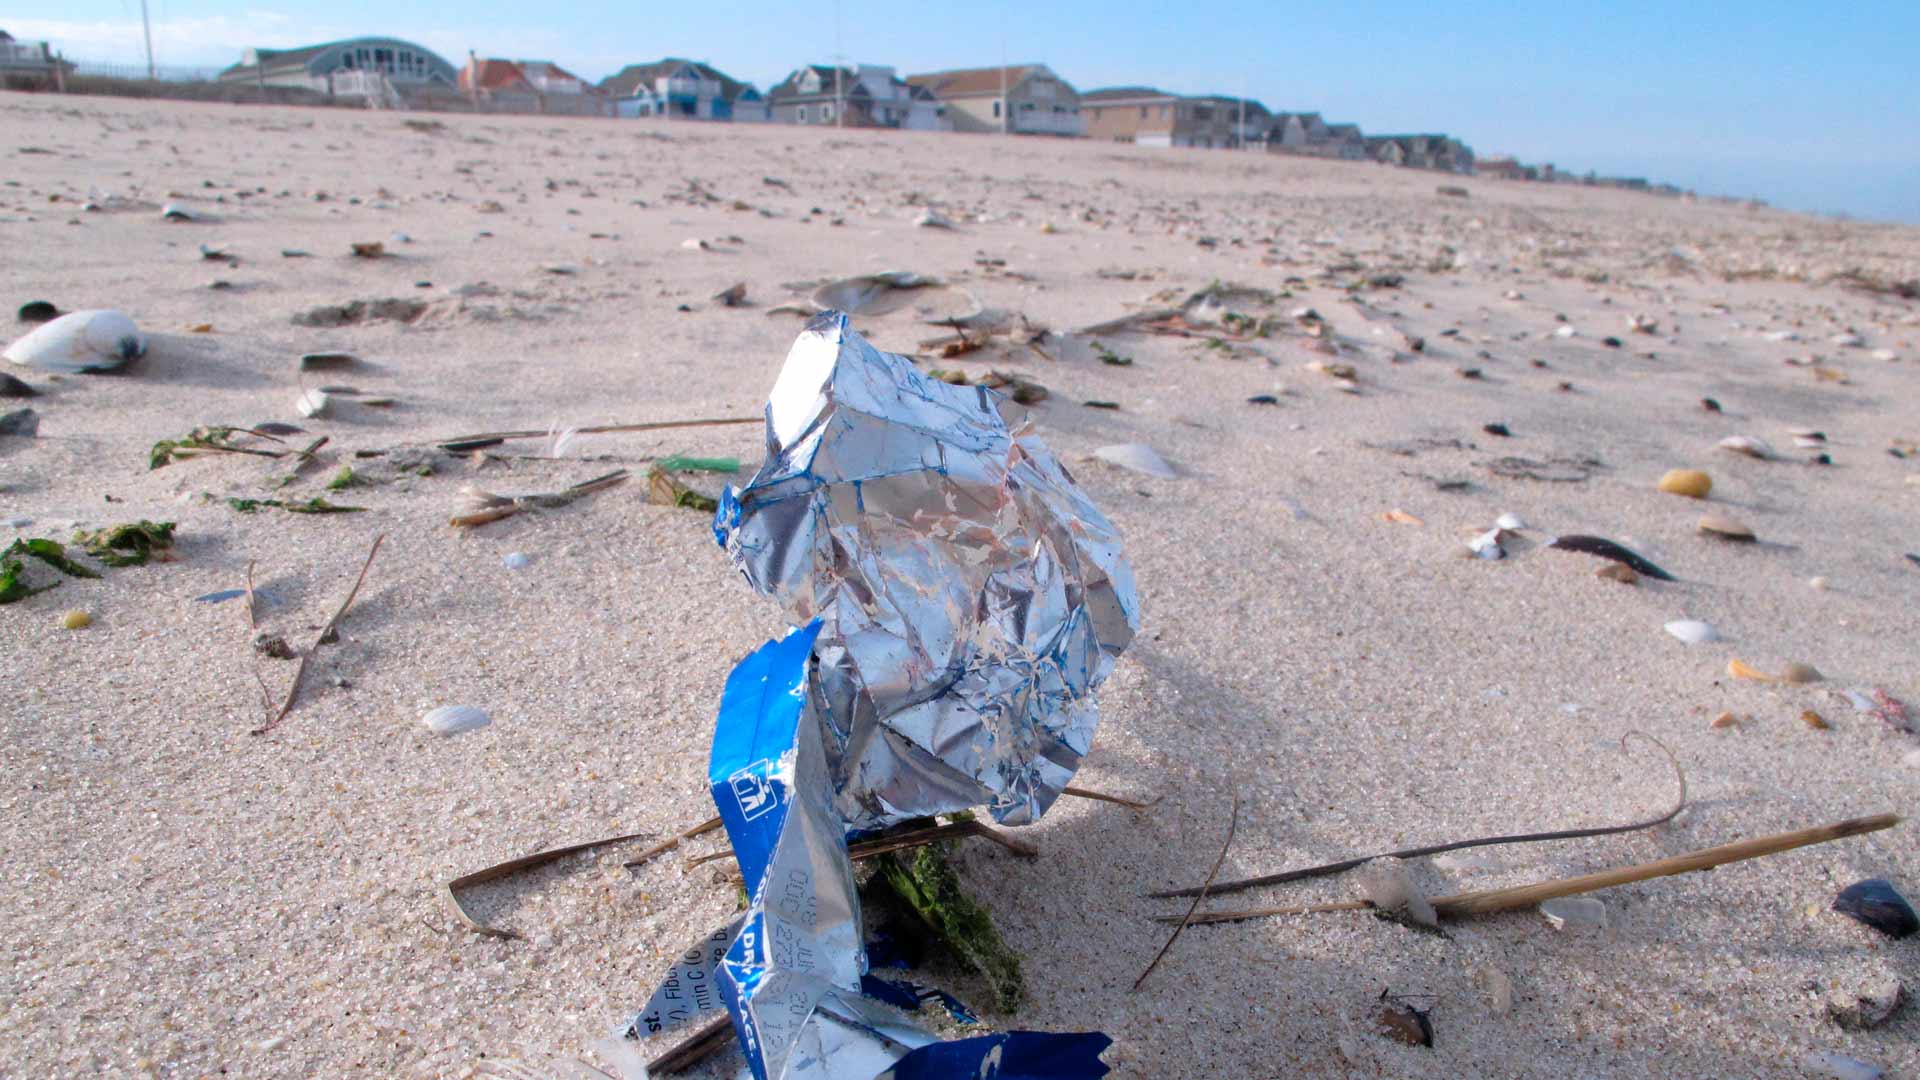 El 75% de la basura de las playas españolas es plástico